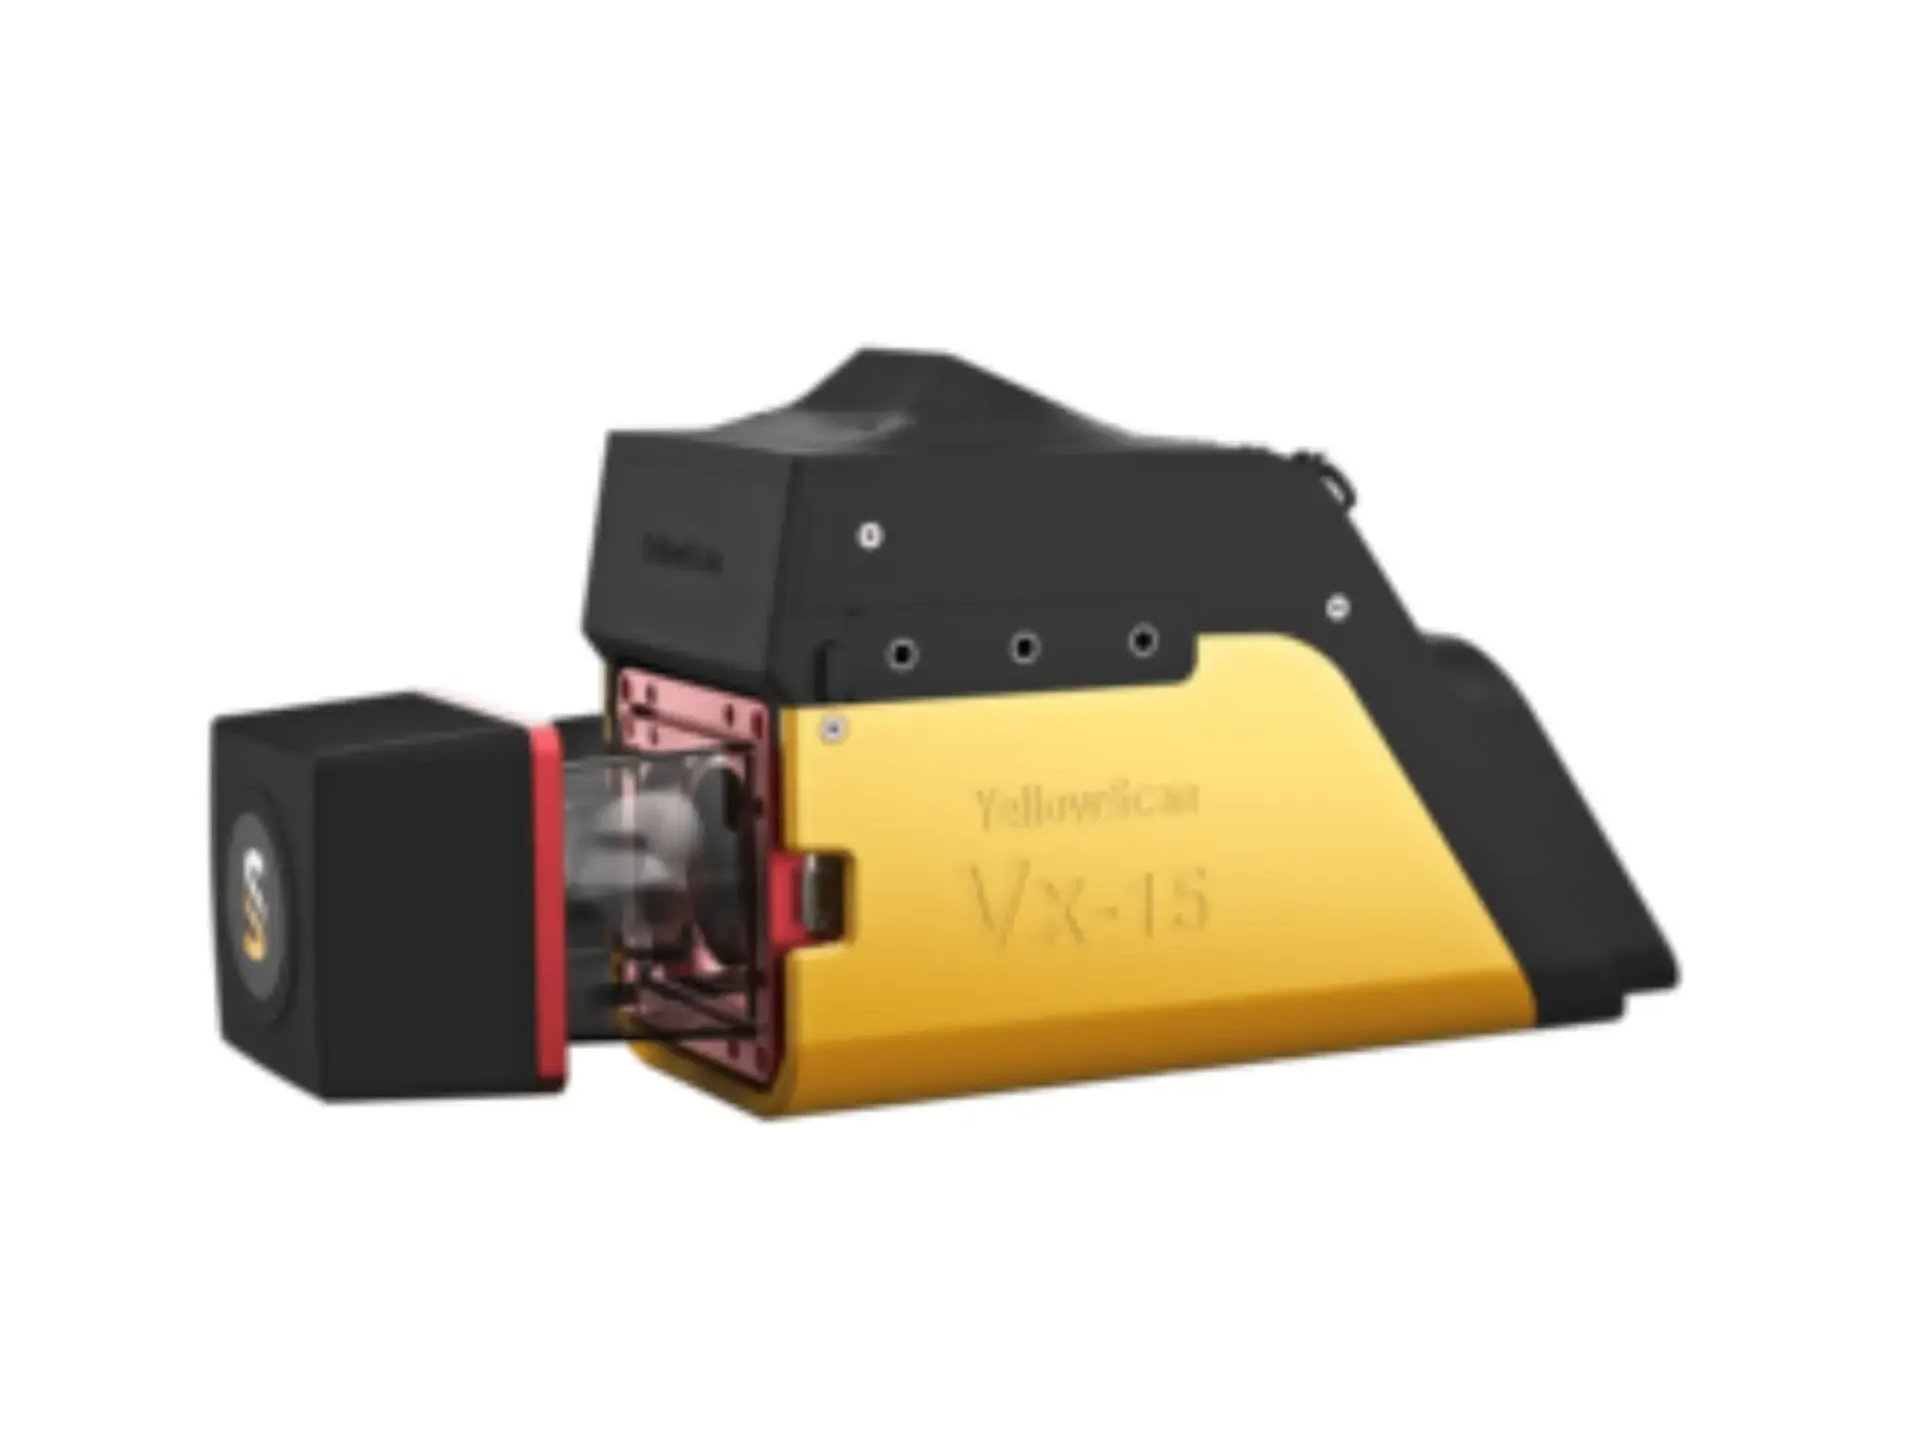 YellowScan VX15 Series